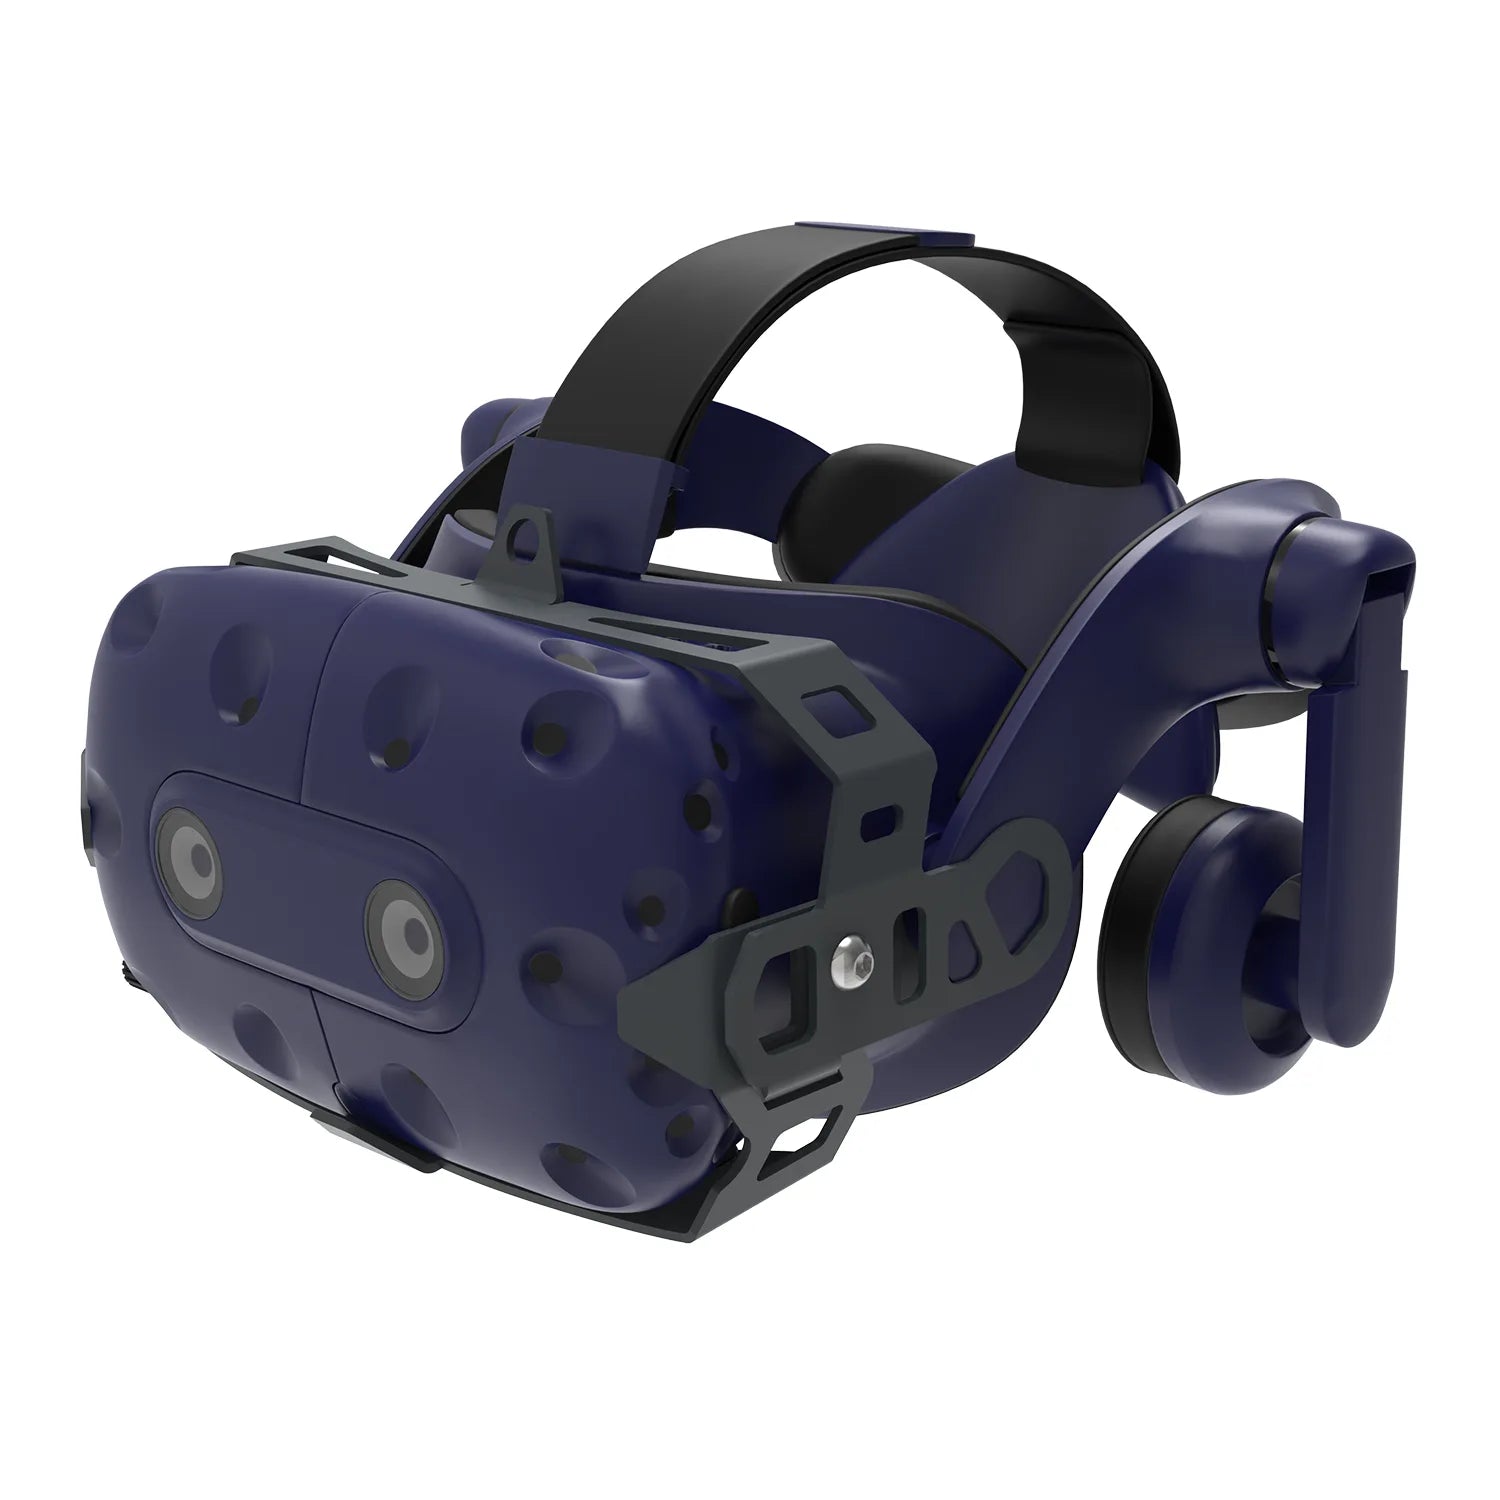 Fixations rétractables VR pour HTC VIVE, Fixations